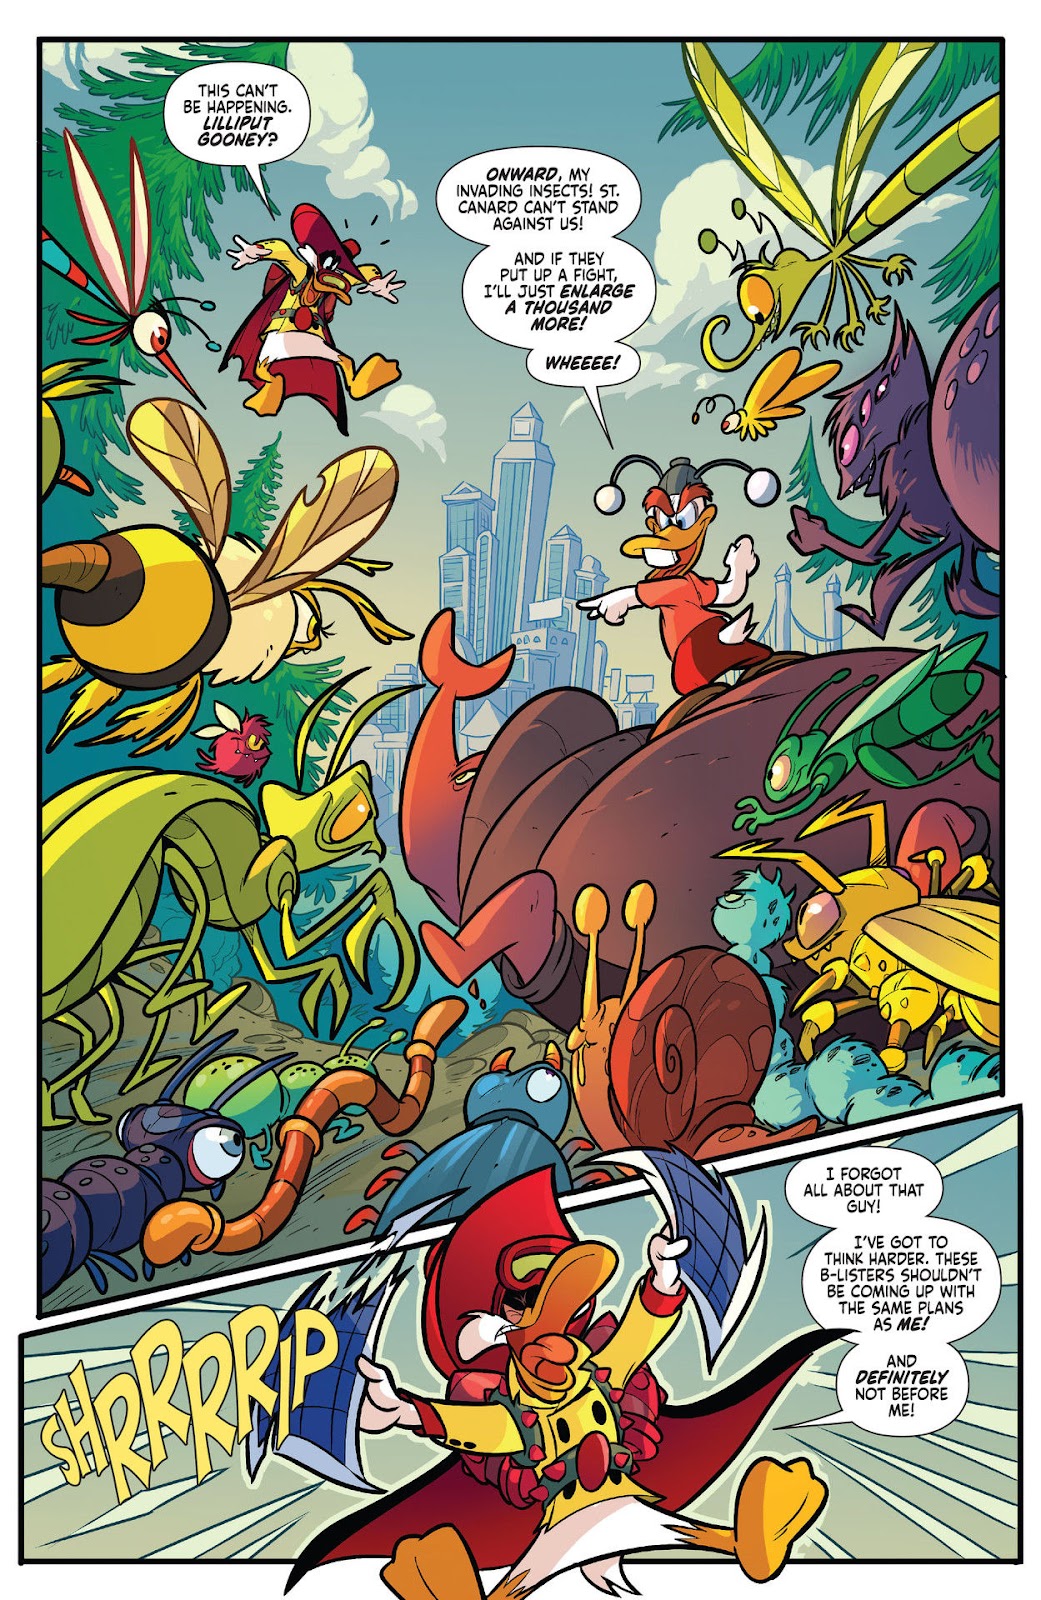 Darkwing Duck: Negaduck issue 1 - Page 16